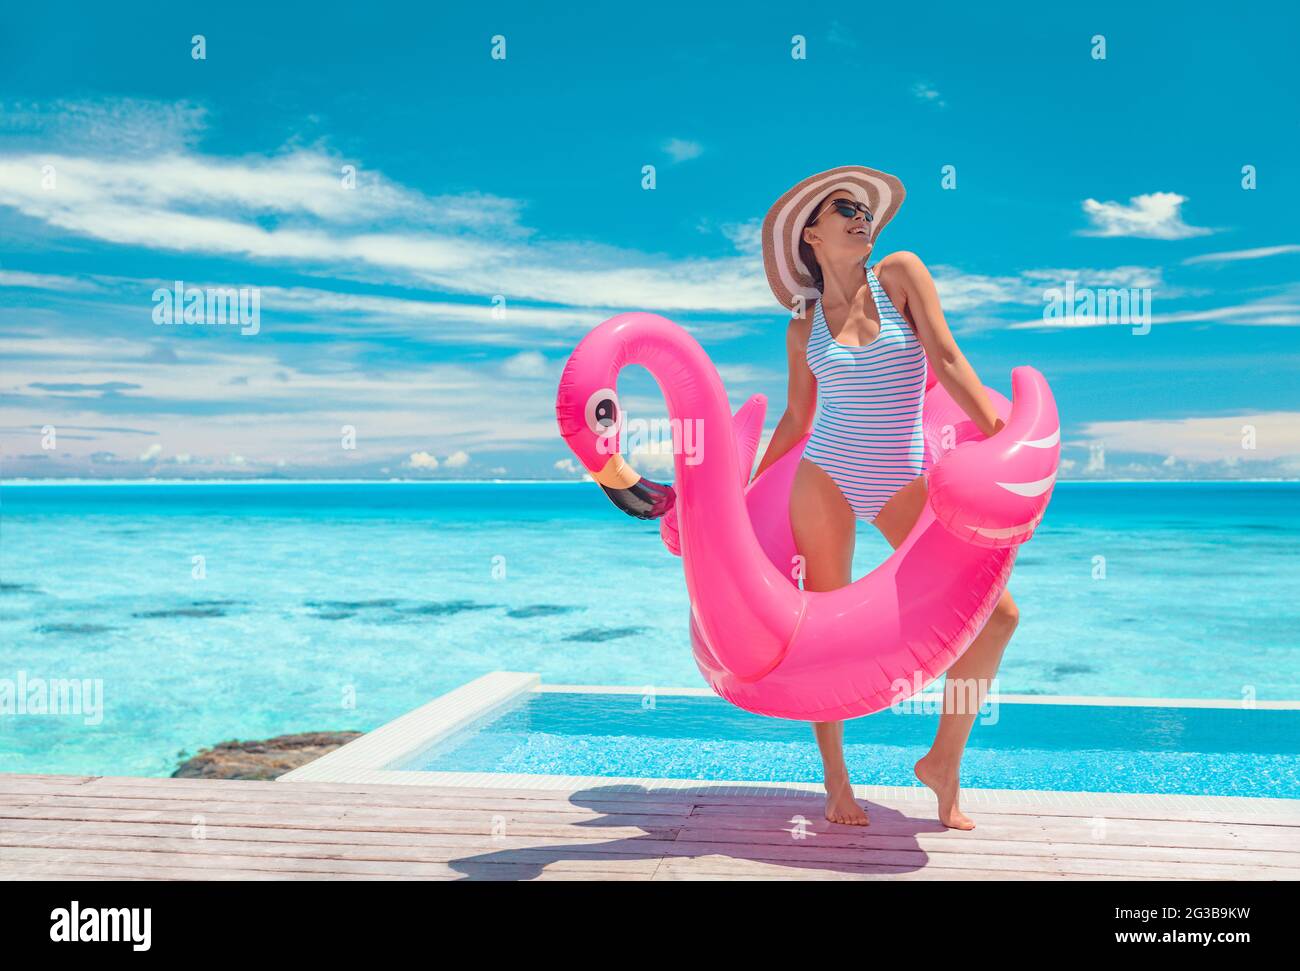 Piscina de verano divertido modelo de traje de baño posando en rosa flamingos flotando mostrando la figura delgada bikini cuerpo listo una escapada de vacaciones de lujo en el Caribe. Mujer